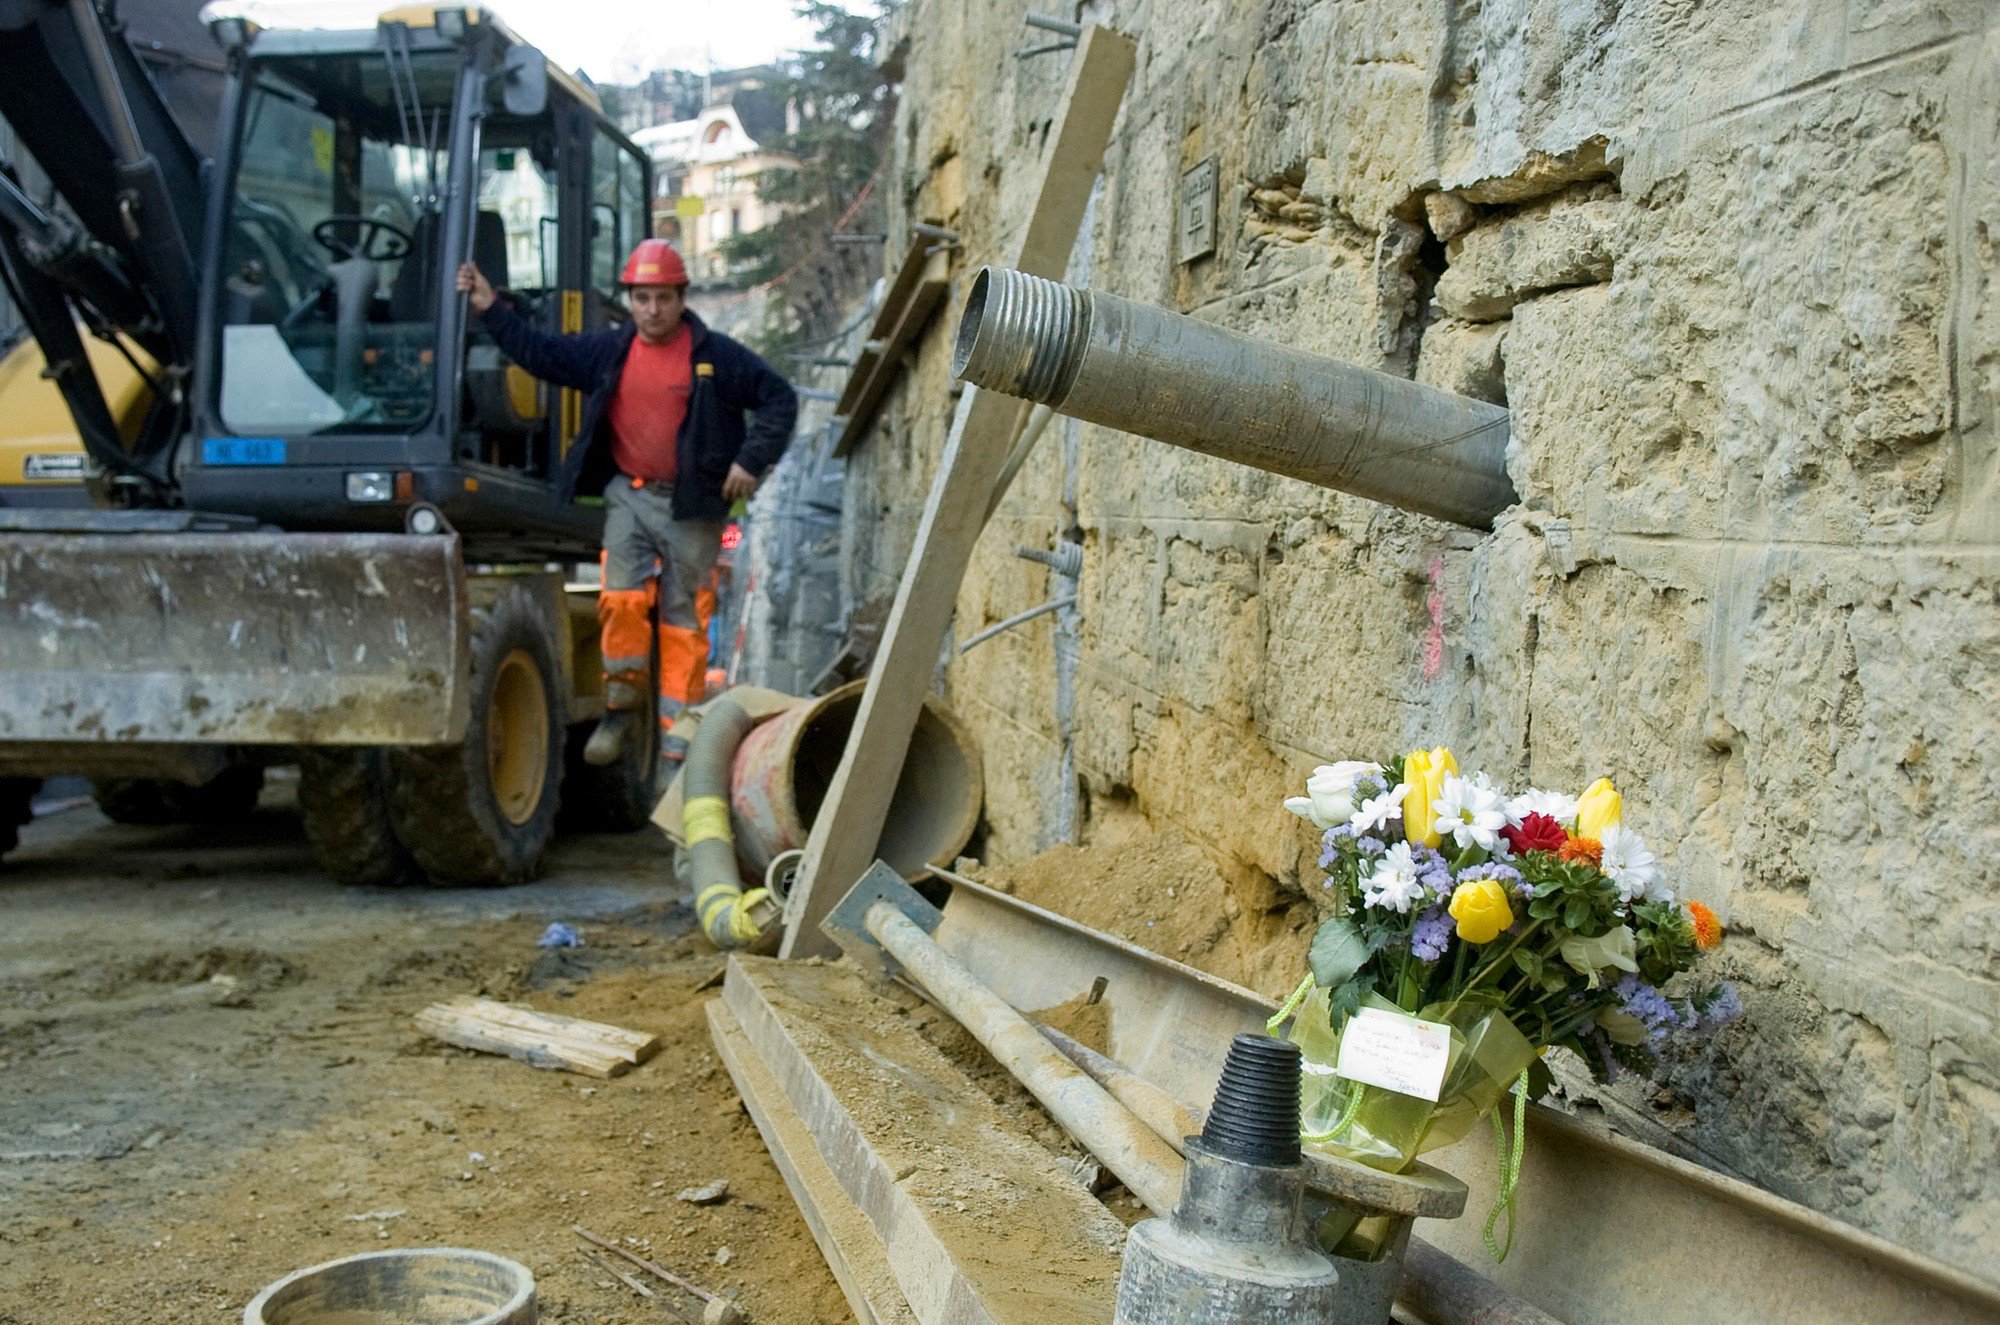 Un bouquet de fleurs avait été placé sur le chantier en mémoire de l'ouvrier décédé.